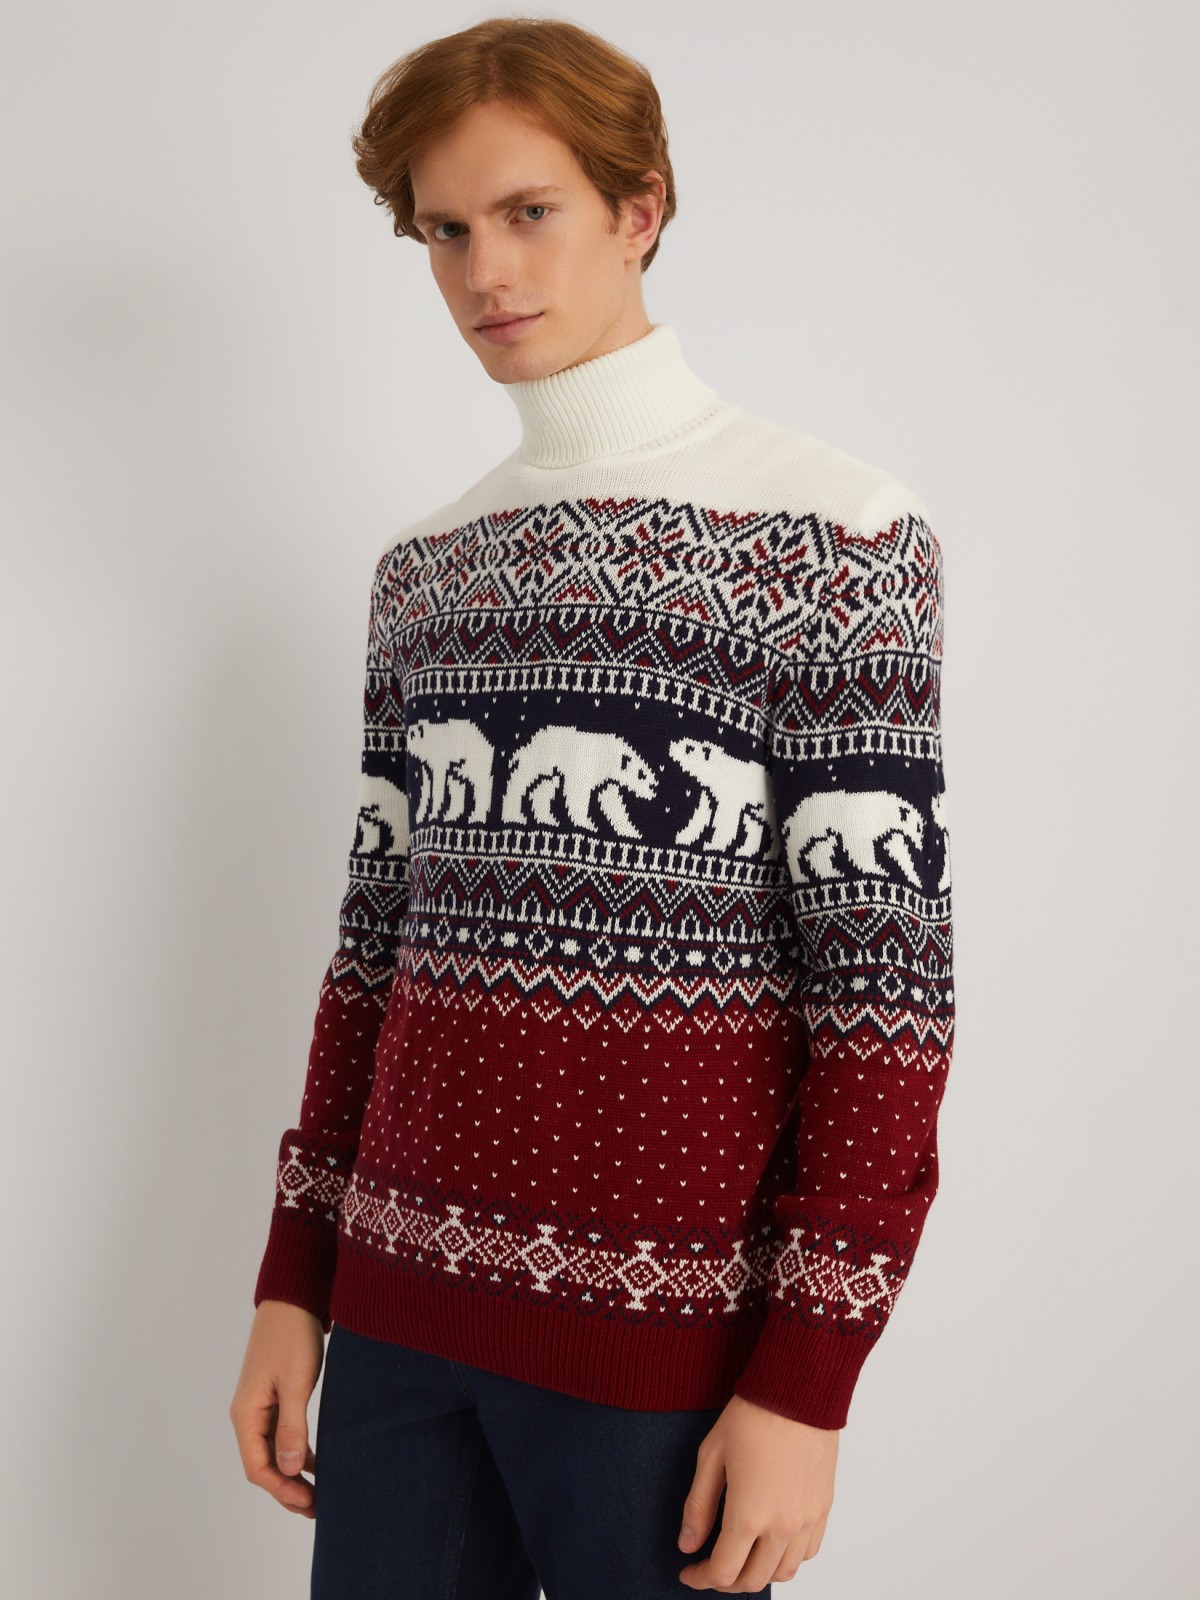 Вязаный свитер из акрила со скандинавским узором zolla 013446101013, цвет бордо, размер M - фото 1